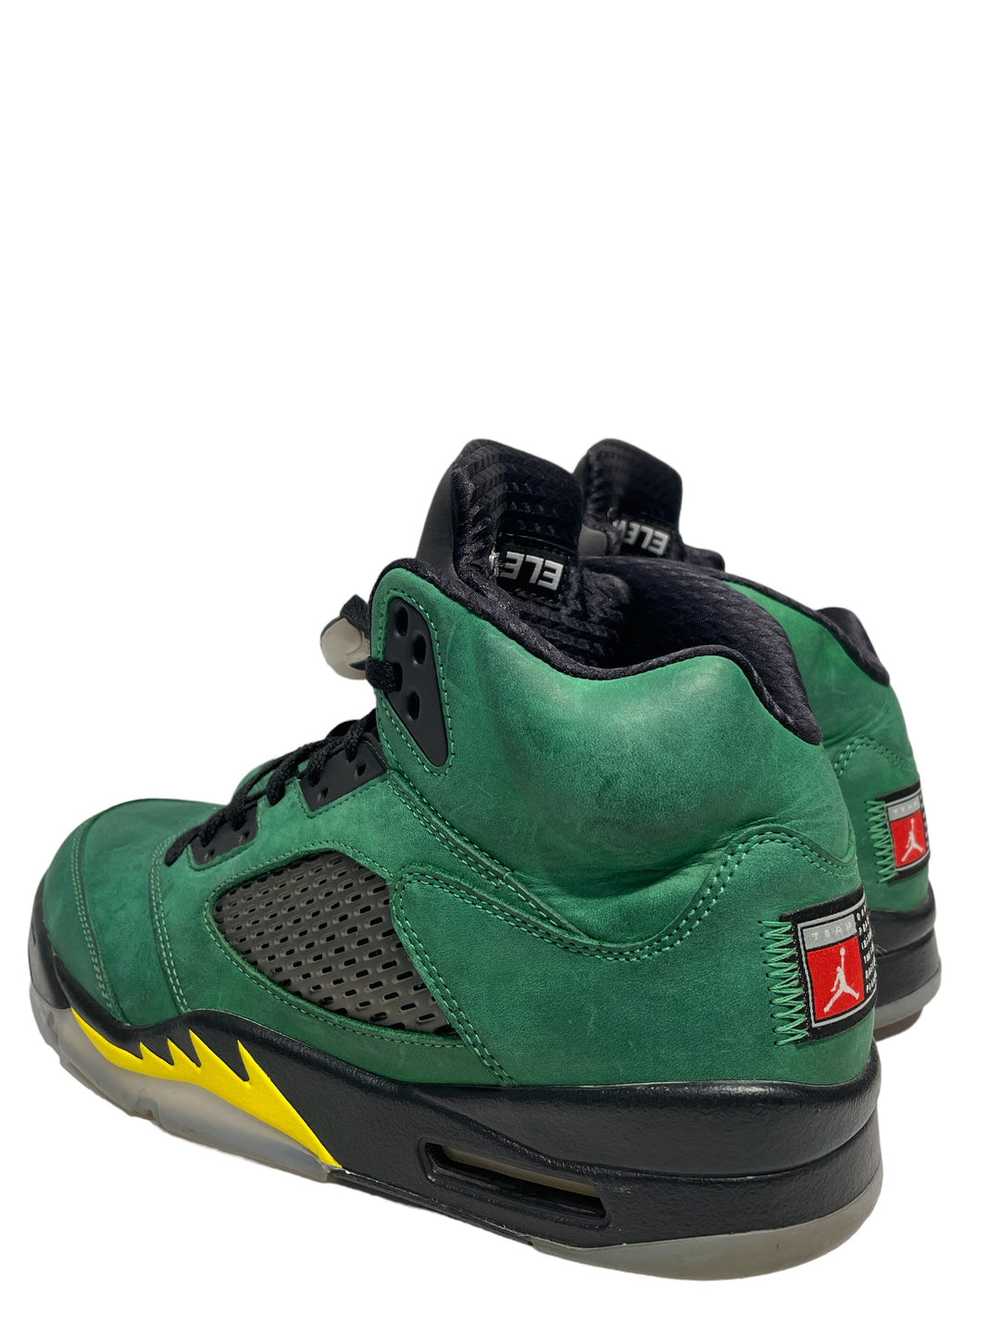 Jordan/Hi-Sneakers/US 10/Polyester/GRN/RETRO 5 - image 2